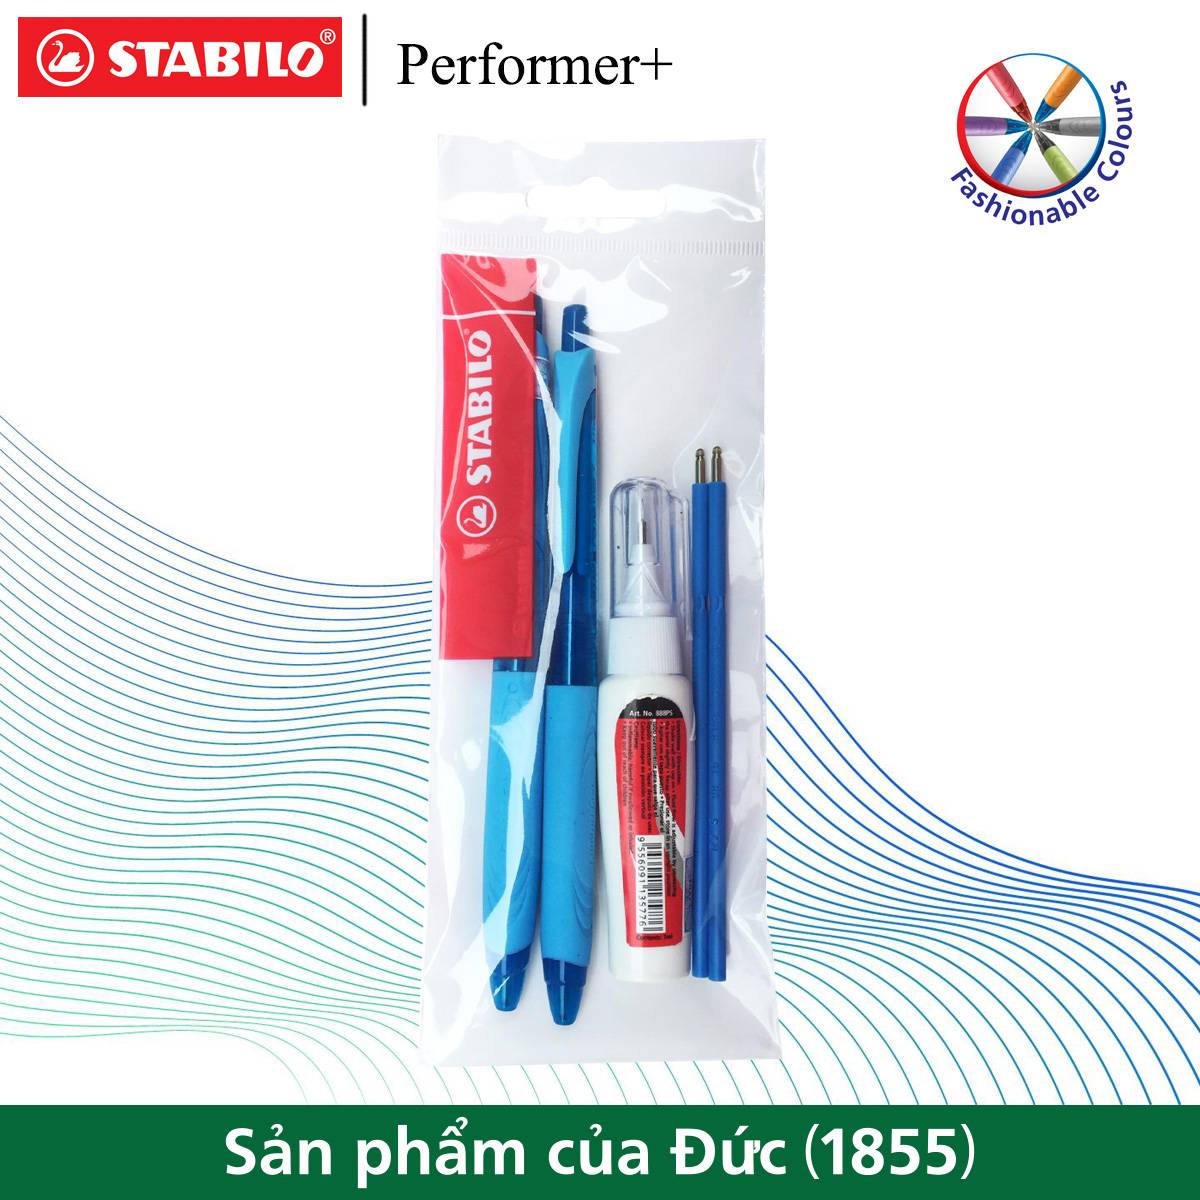 Bộ 2 cây bút bi STABILO Performer+ BP328XF 0.5mm